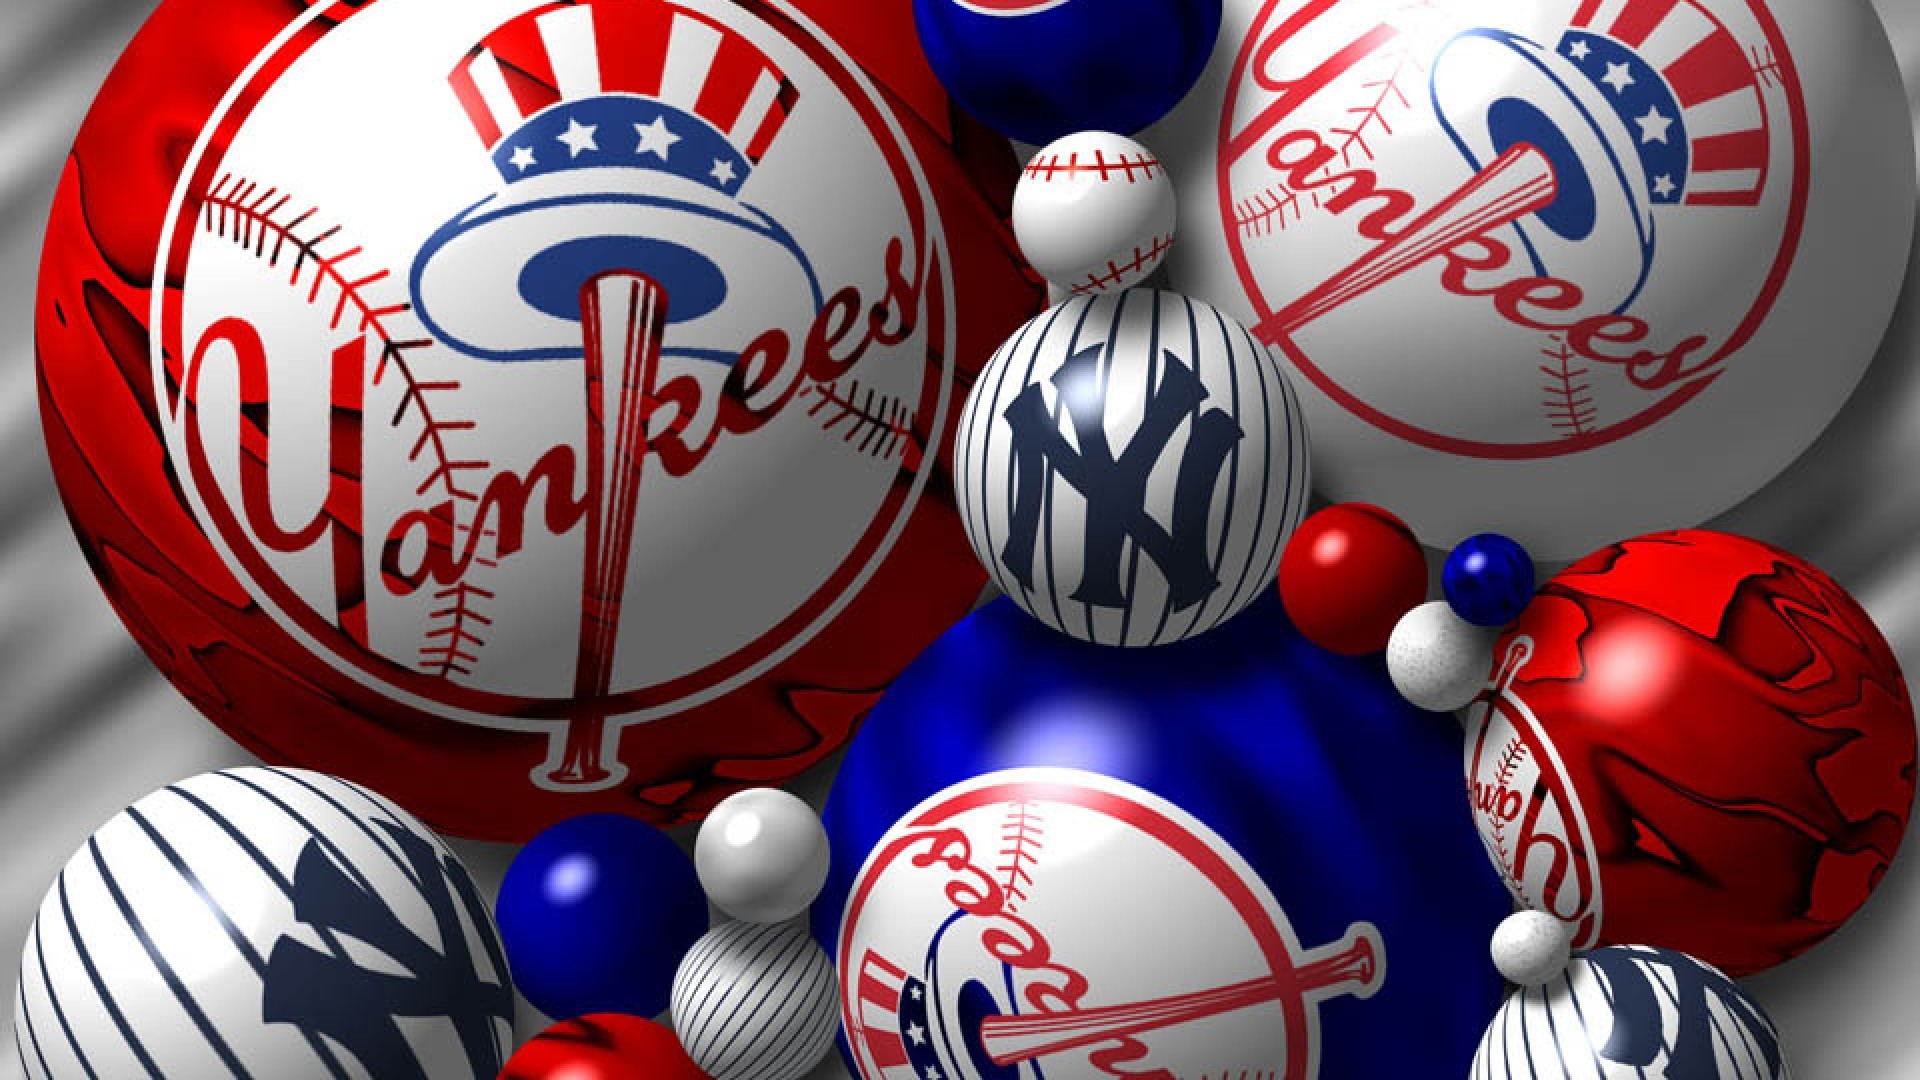 MLB New York Yankees Team Logo wallpaper 2018 in Baseball